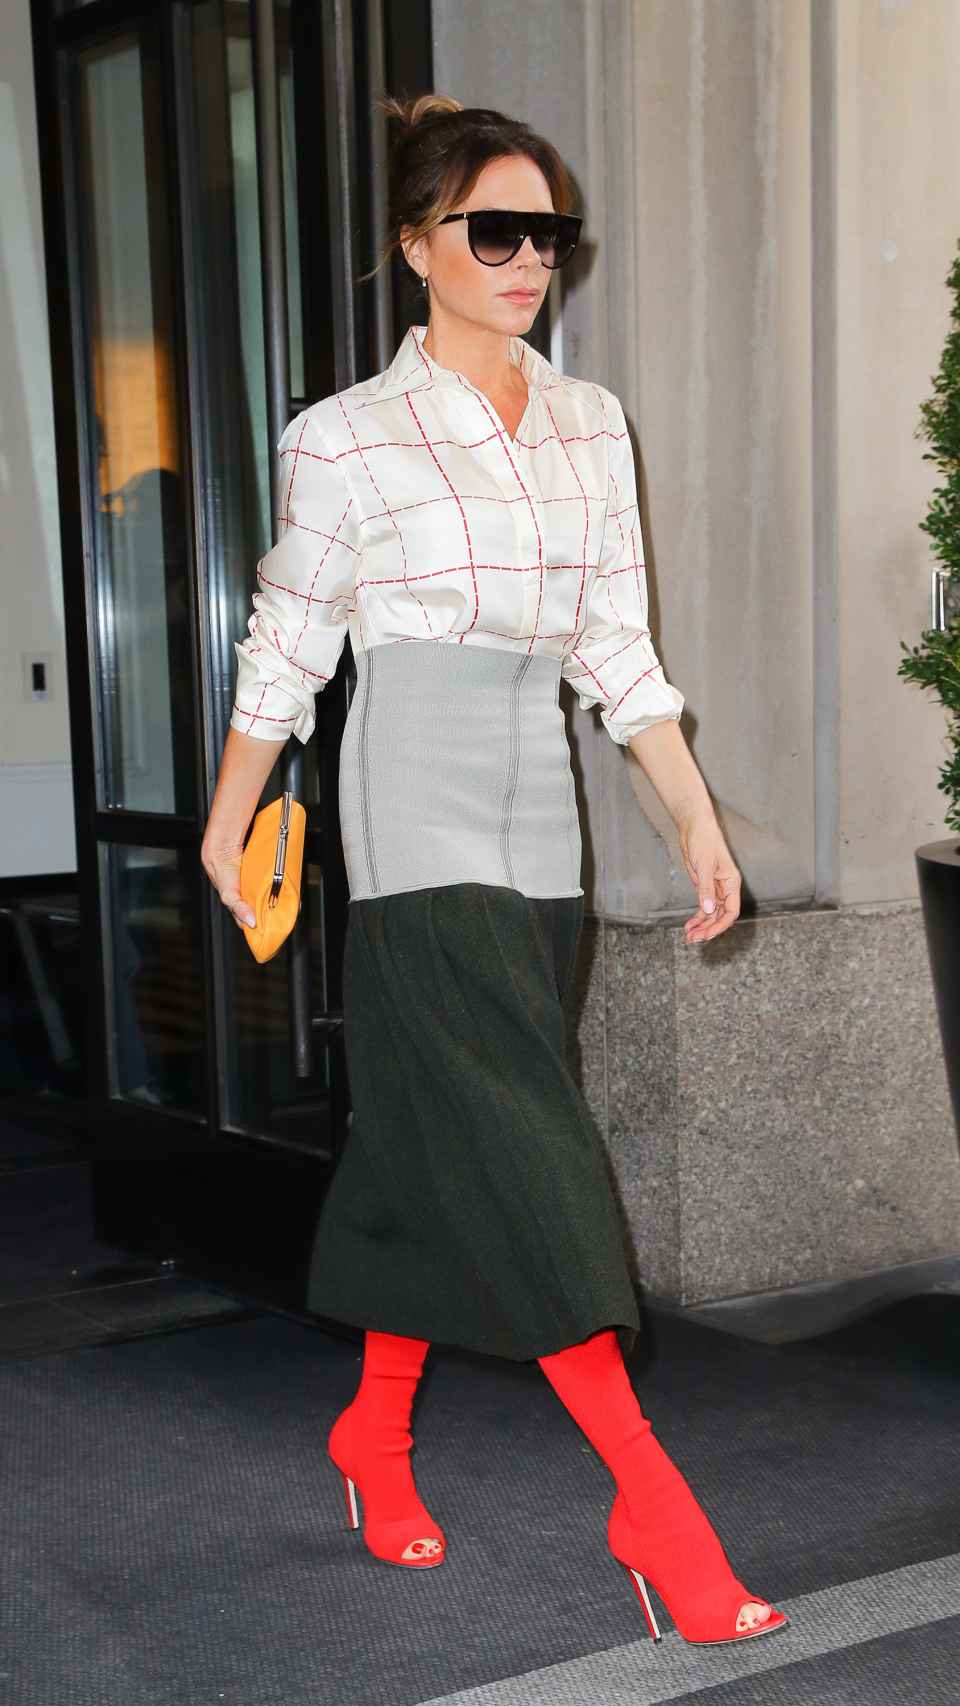 Victoria Beckham, saliendo de un hotel con uno de sus fabulosos 'looks'.